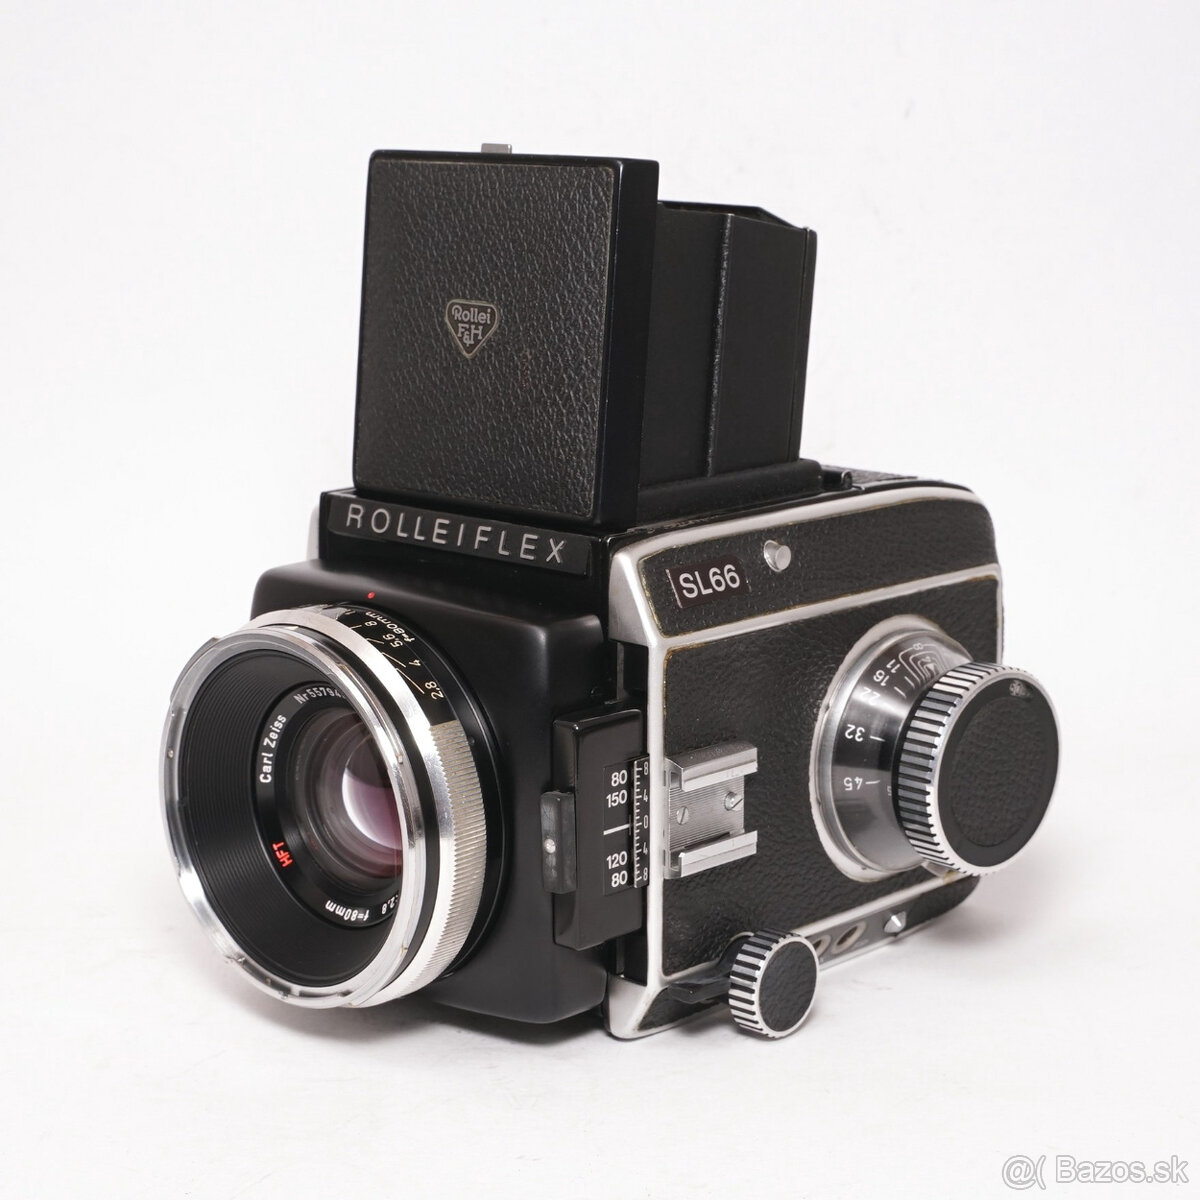 Rolleiflex SL66, Planar 80mm/2,8